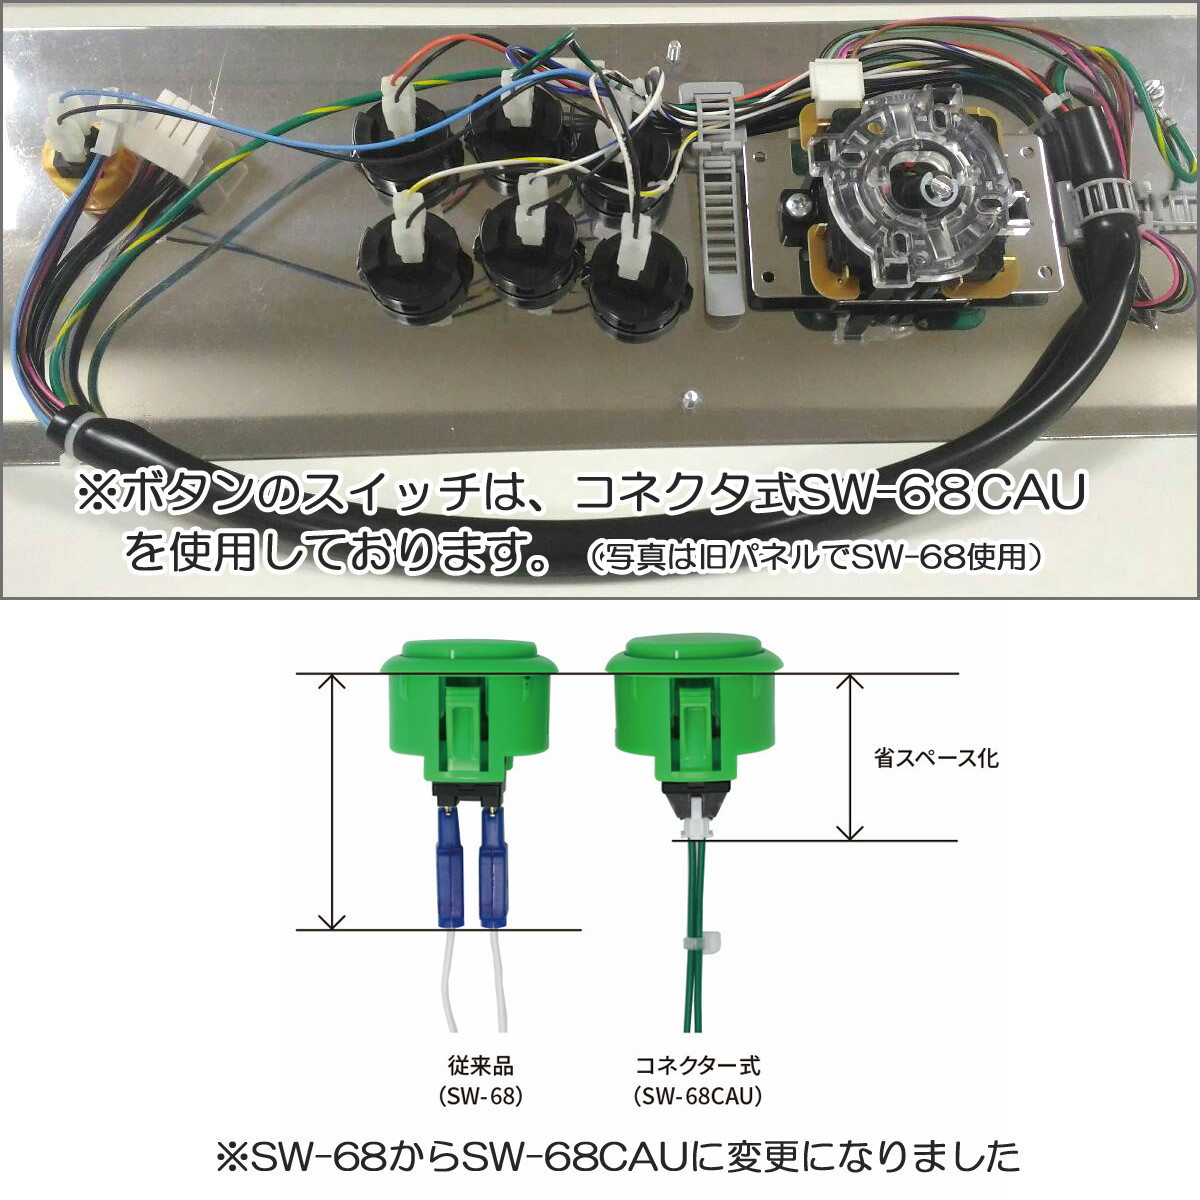 【三和電子】 液晶筐体用コントロールパネル 1L6Bタイプ 【OOM-8-A6NST-H】